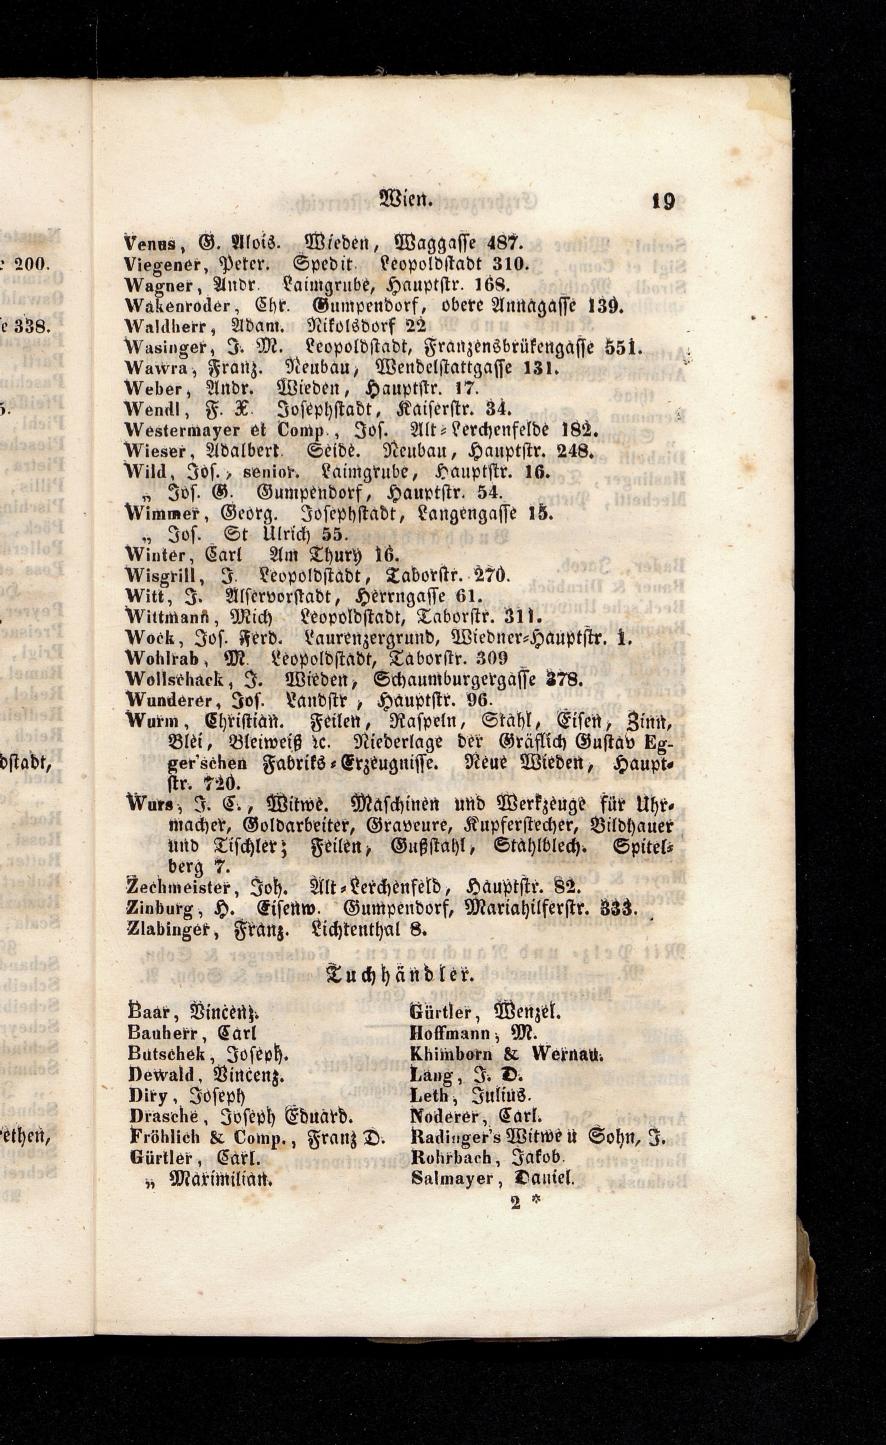 Grosses Adressbuch der Kaufleute. No. 13. Oesterreich ober u. unter der Enns 1844 - Seite 23